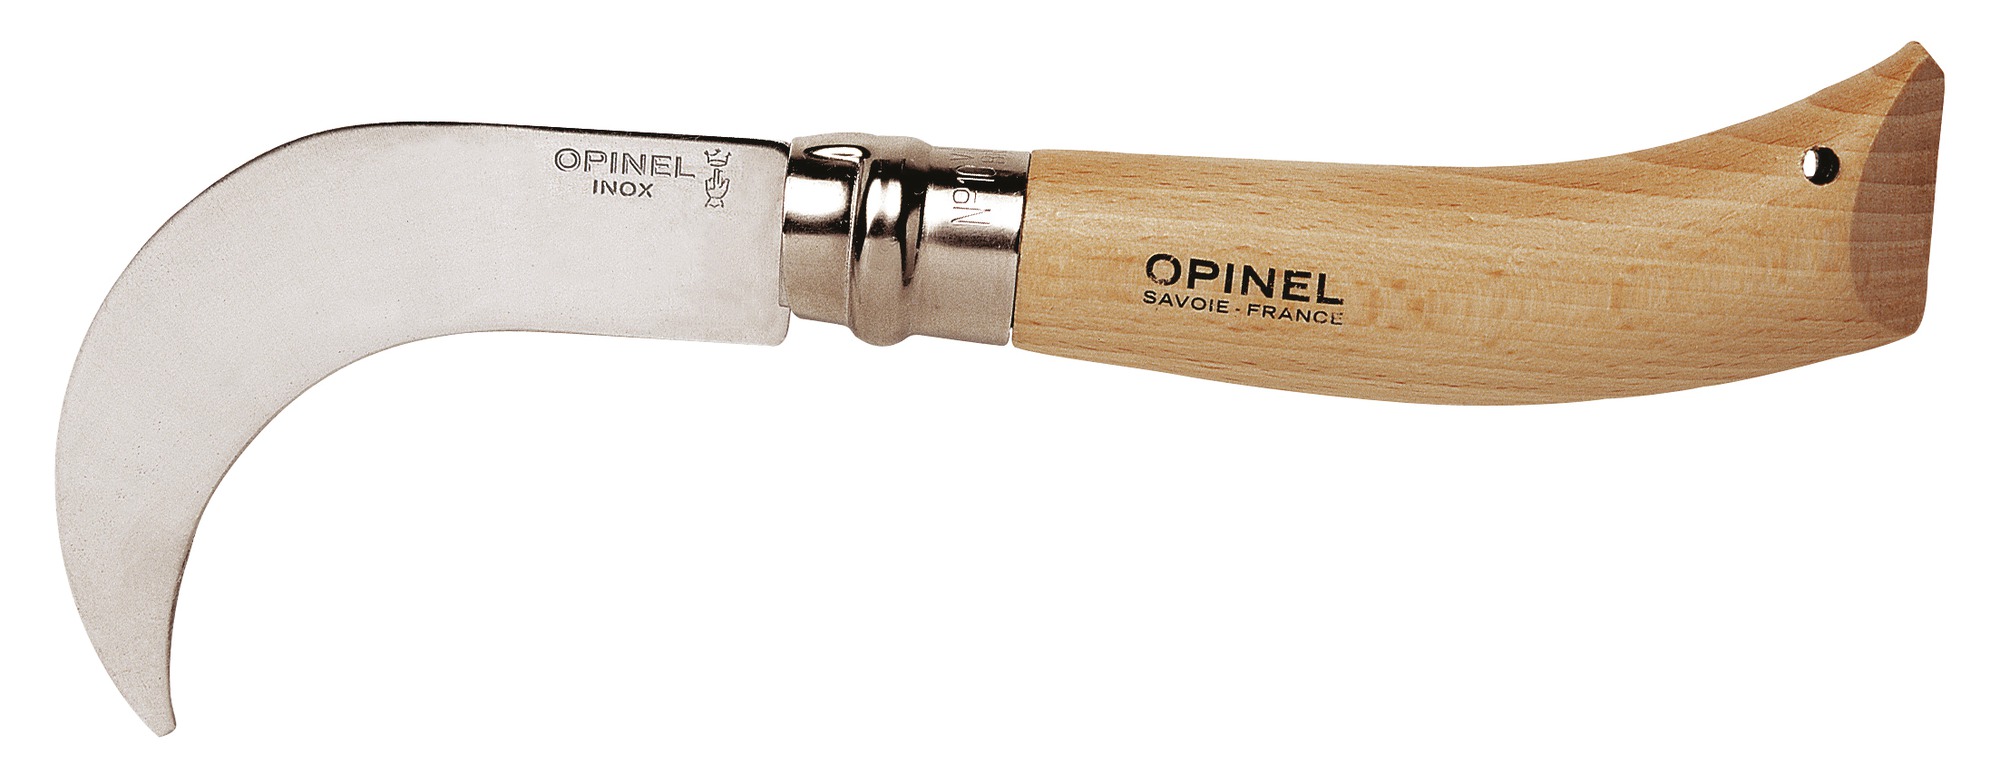 Serpette Opinel - Lame inox - Longueur 10 cm - n°10